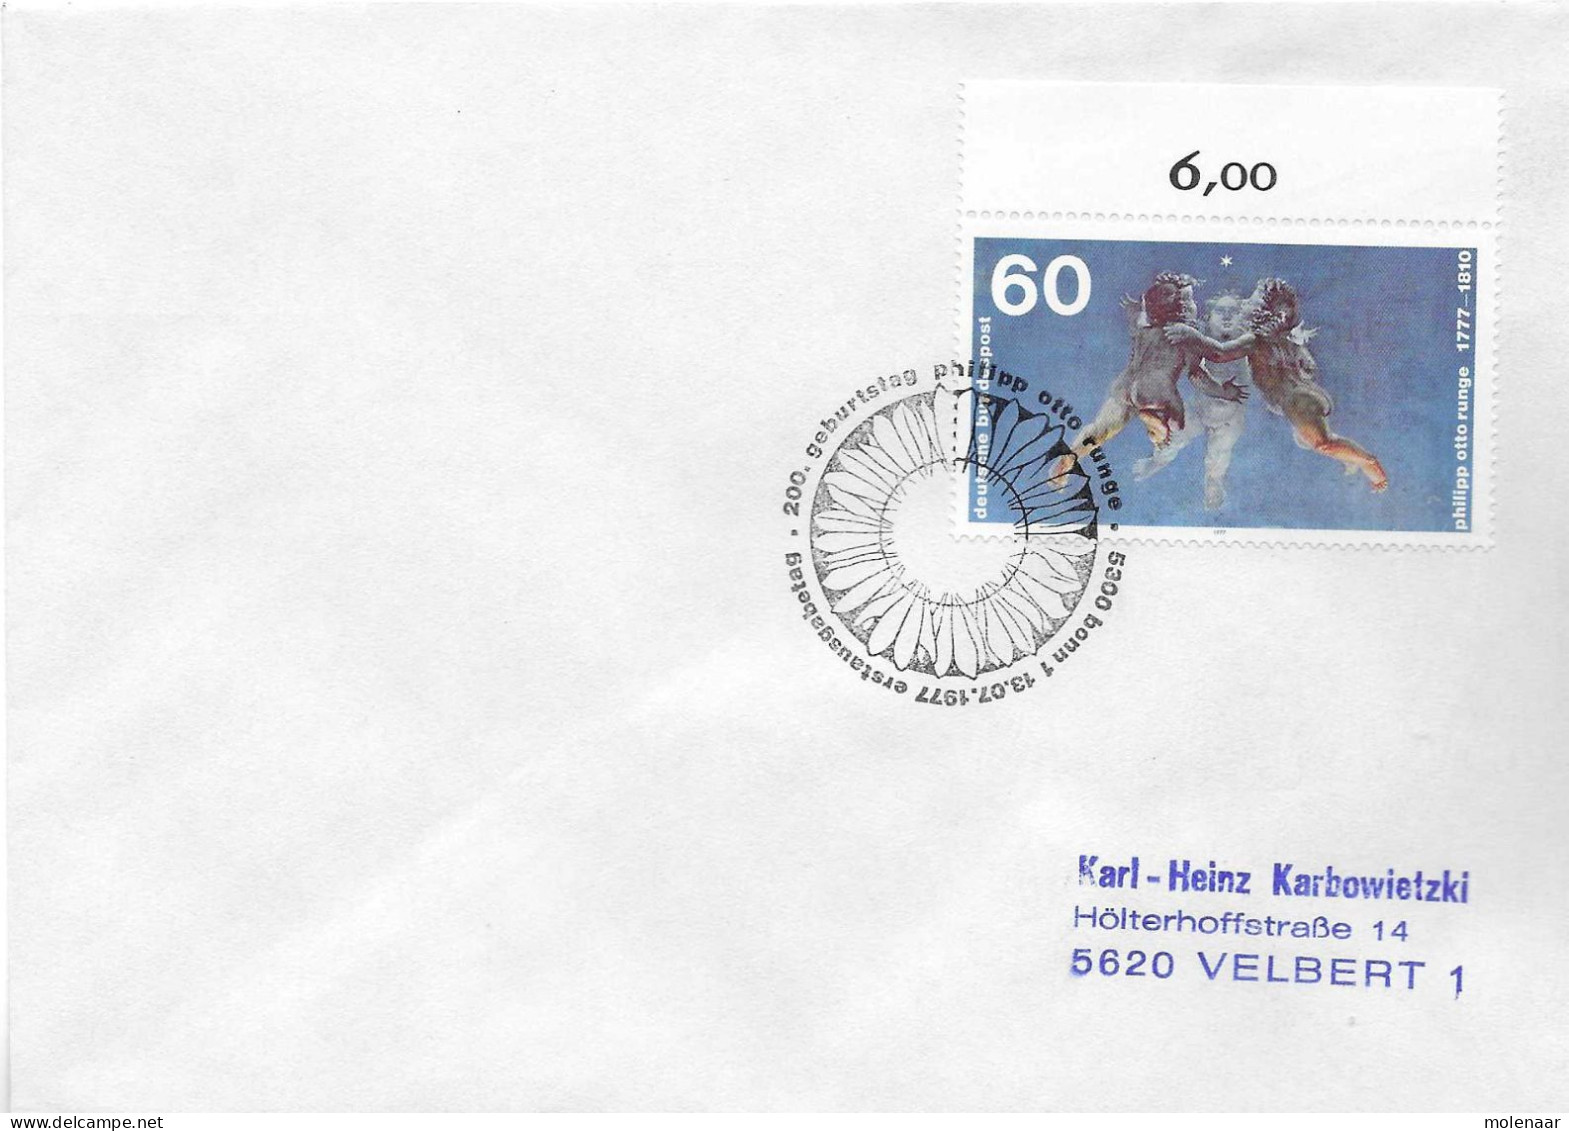 Postzegels > Europa > Duitsland > West-Duitsland > 1970-1979 > Brief Met No. 940 (17377) - Lettres & Documents